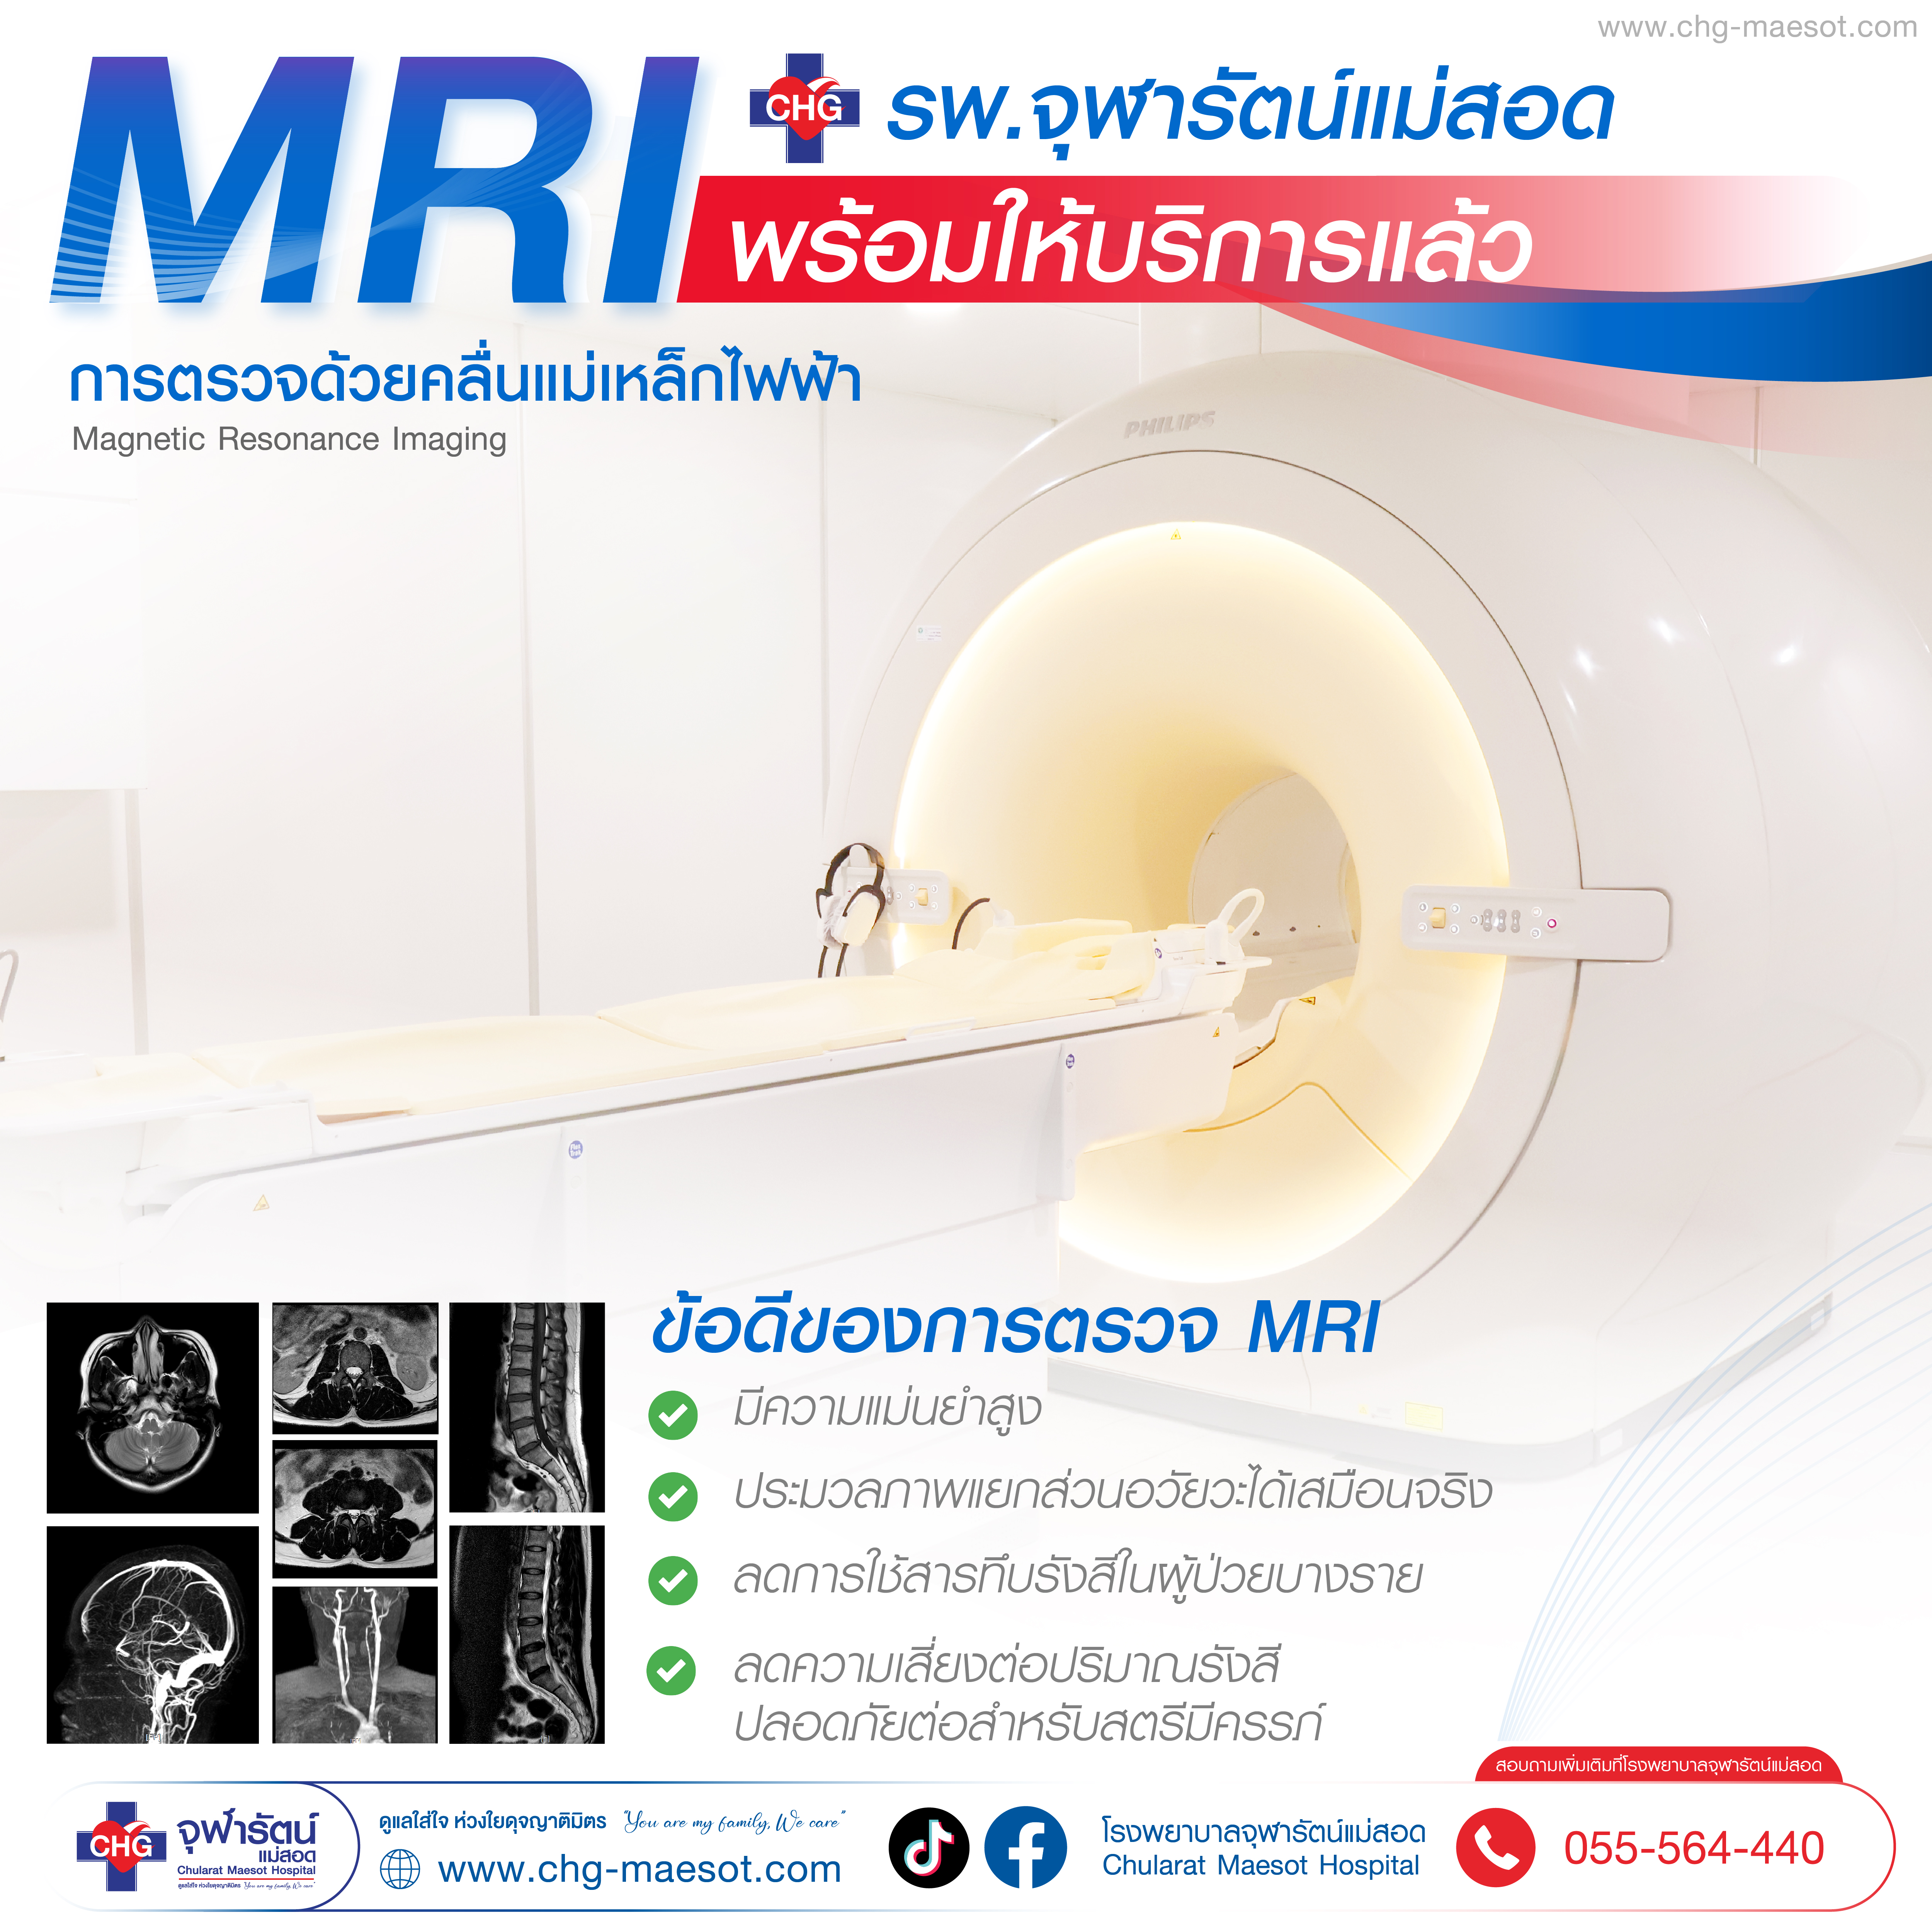 ศูนย์ เอ็ม อาร์ ไอ (MRI) โรงพยาบาลจุฬารัตน์แม่สอด - โรงพยาบาลจุฬารัตน์แม่สอด